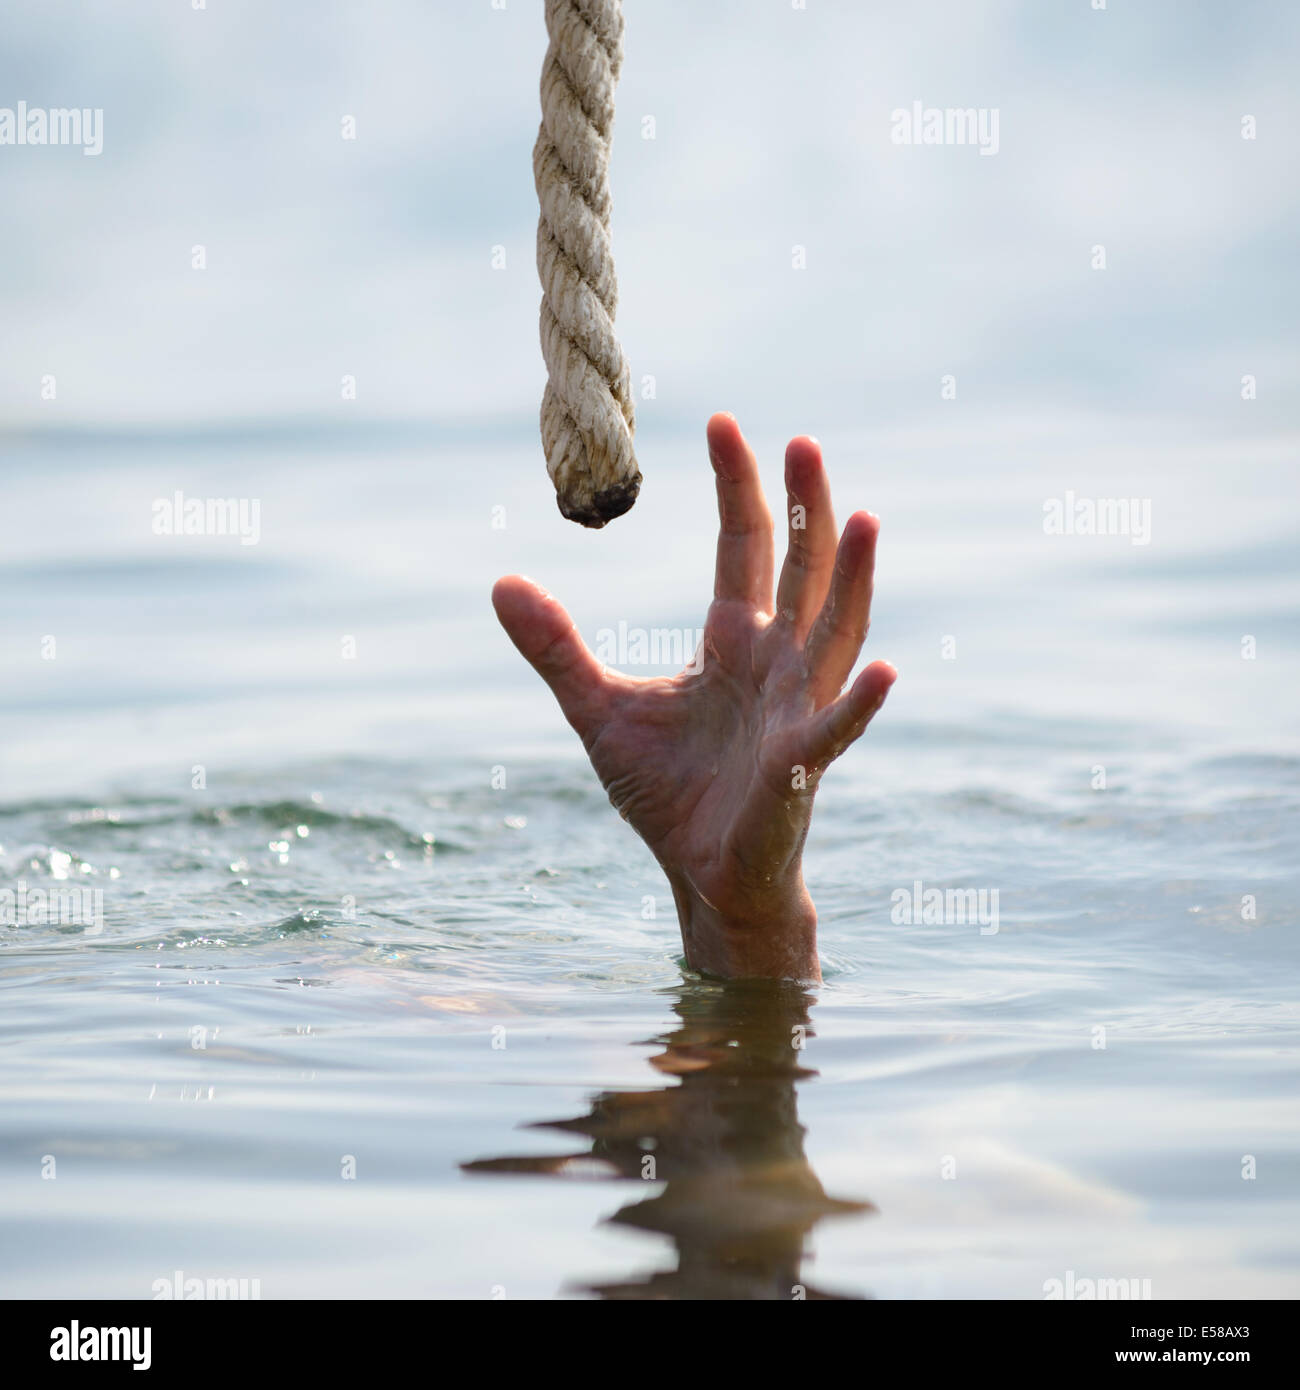 saving a drowning man Stock Photo